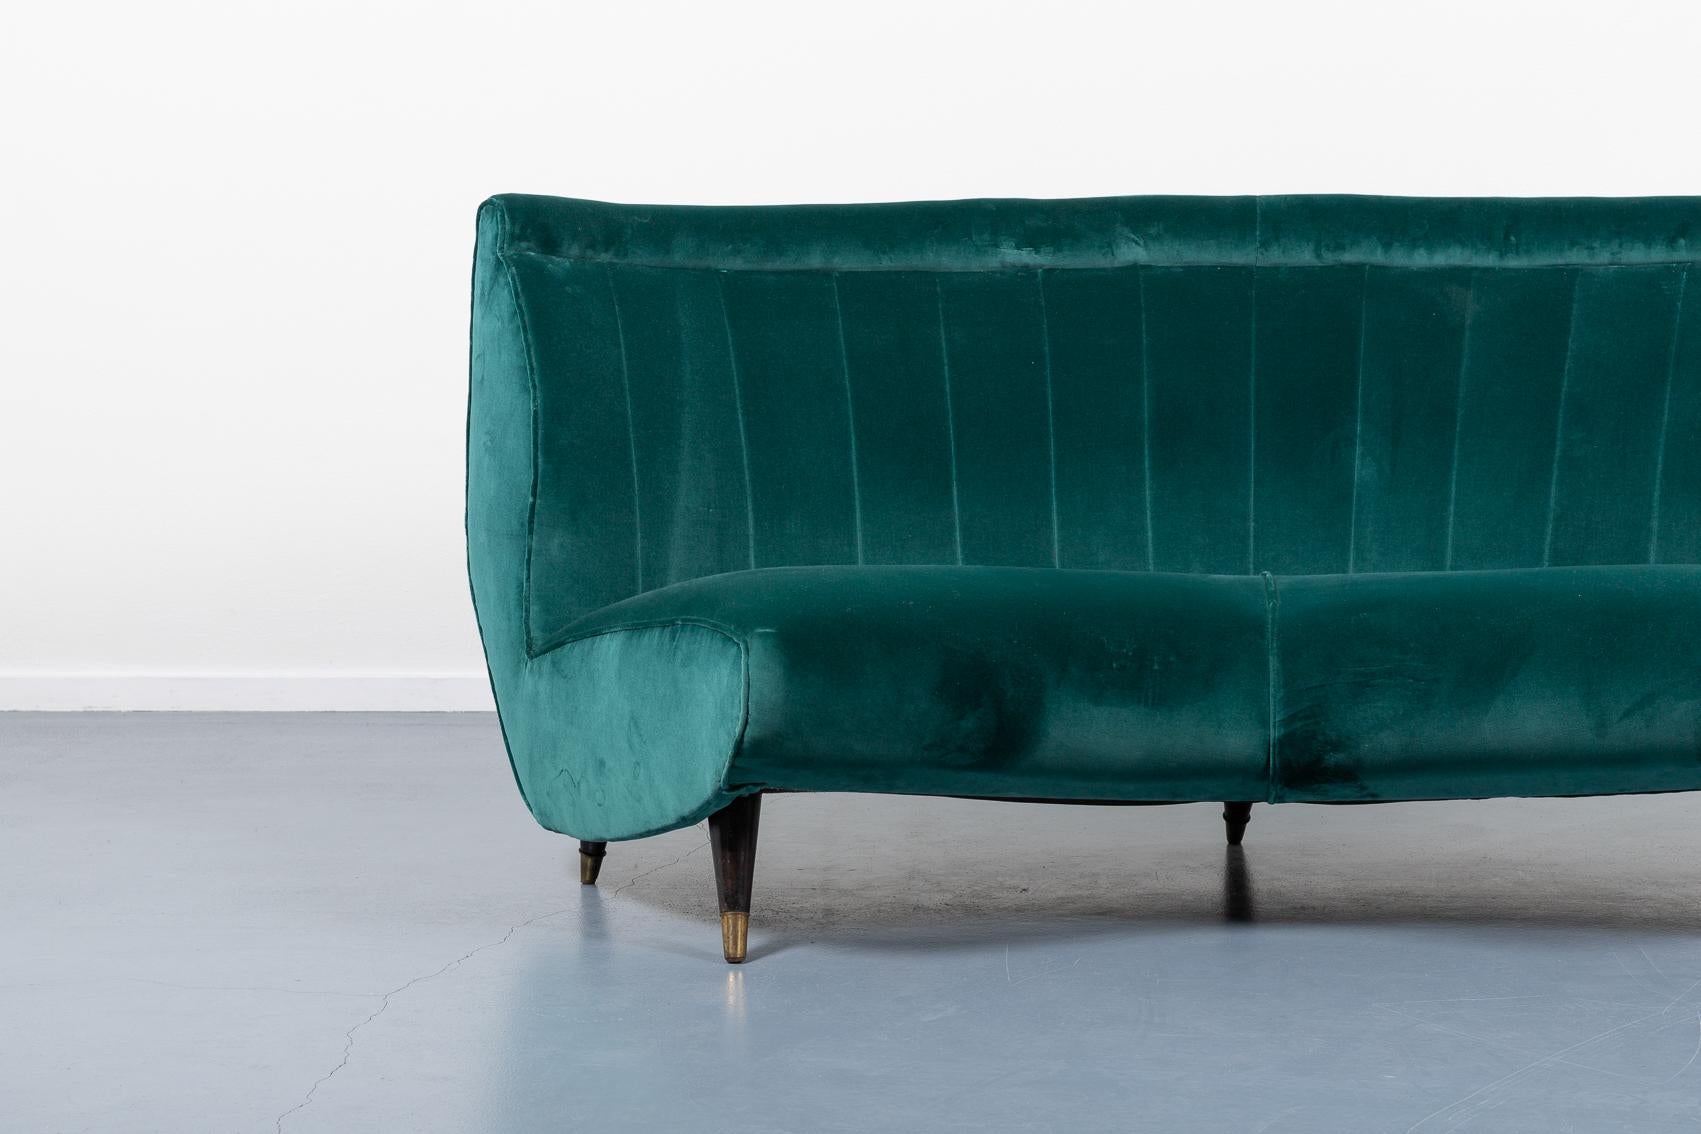 Seltenes geschwungenes italienisches Mid Century Modern-Sofa, entworfen von Guglielmo Veronesi für ISA Production. Er verfügt über einen skulpturalen Holzrahmen mit Samtstoffbezug und Lederbeinen mit Messingfüßen.

Bedingung
Gute, spätere